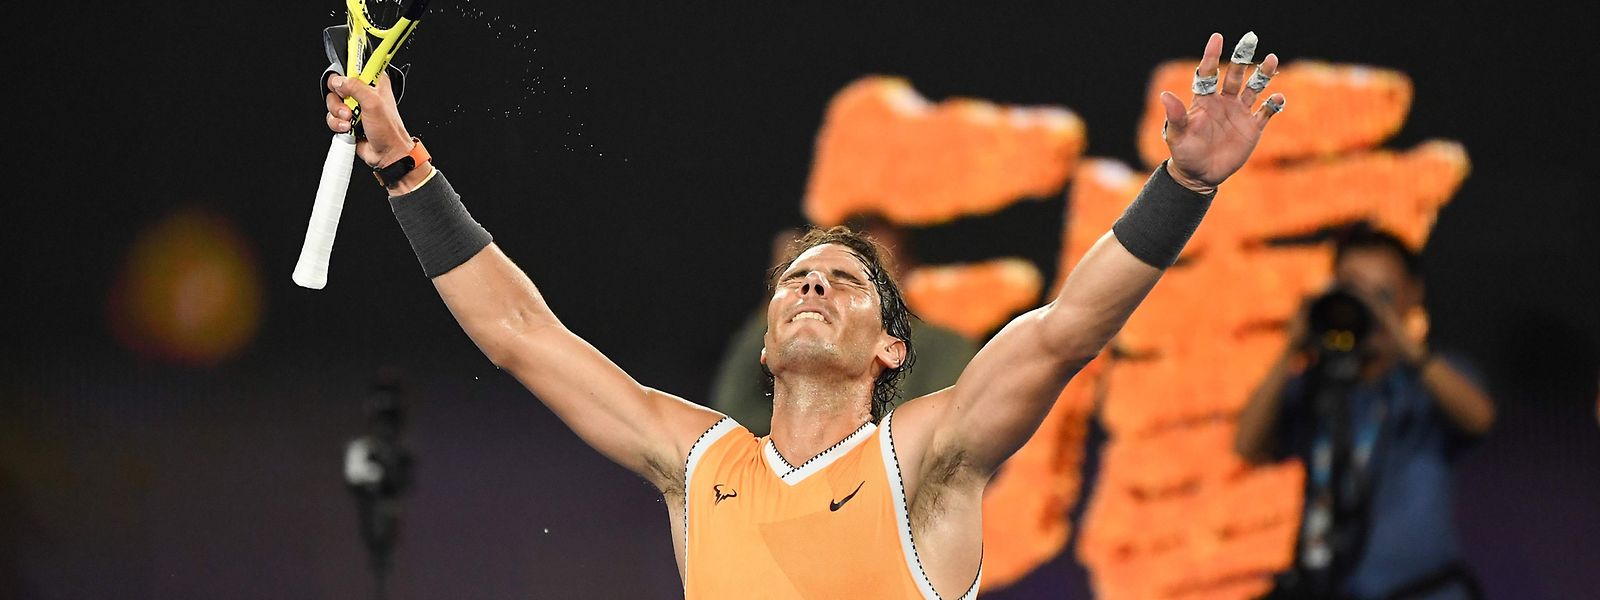 Rafael Nadal genoss den Moment des Sieges in vollen Zügen.